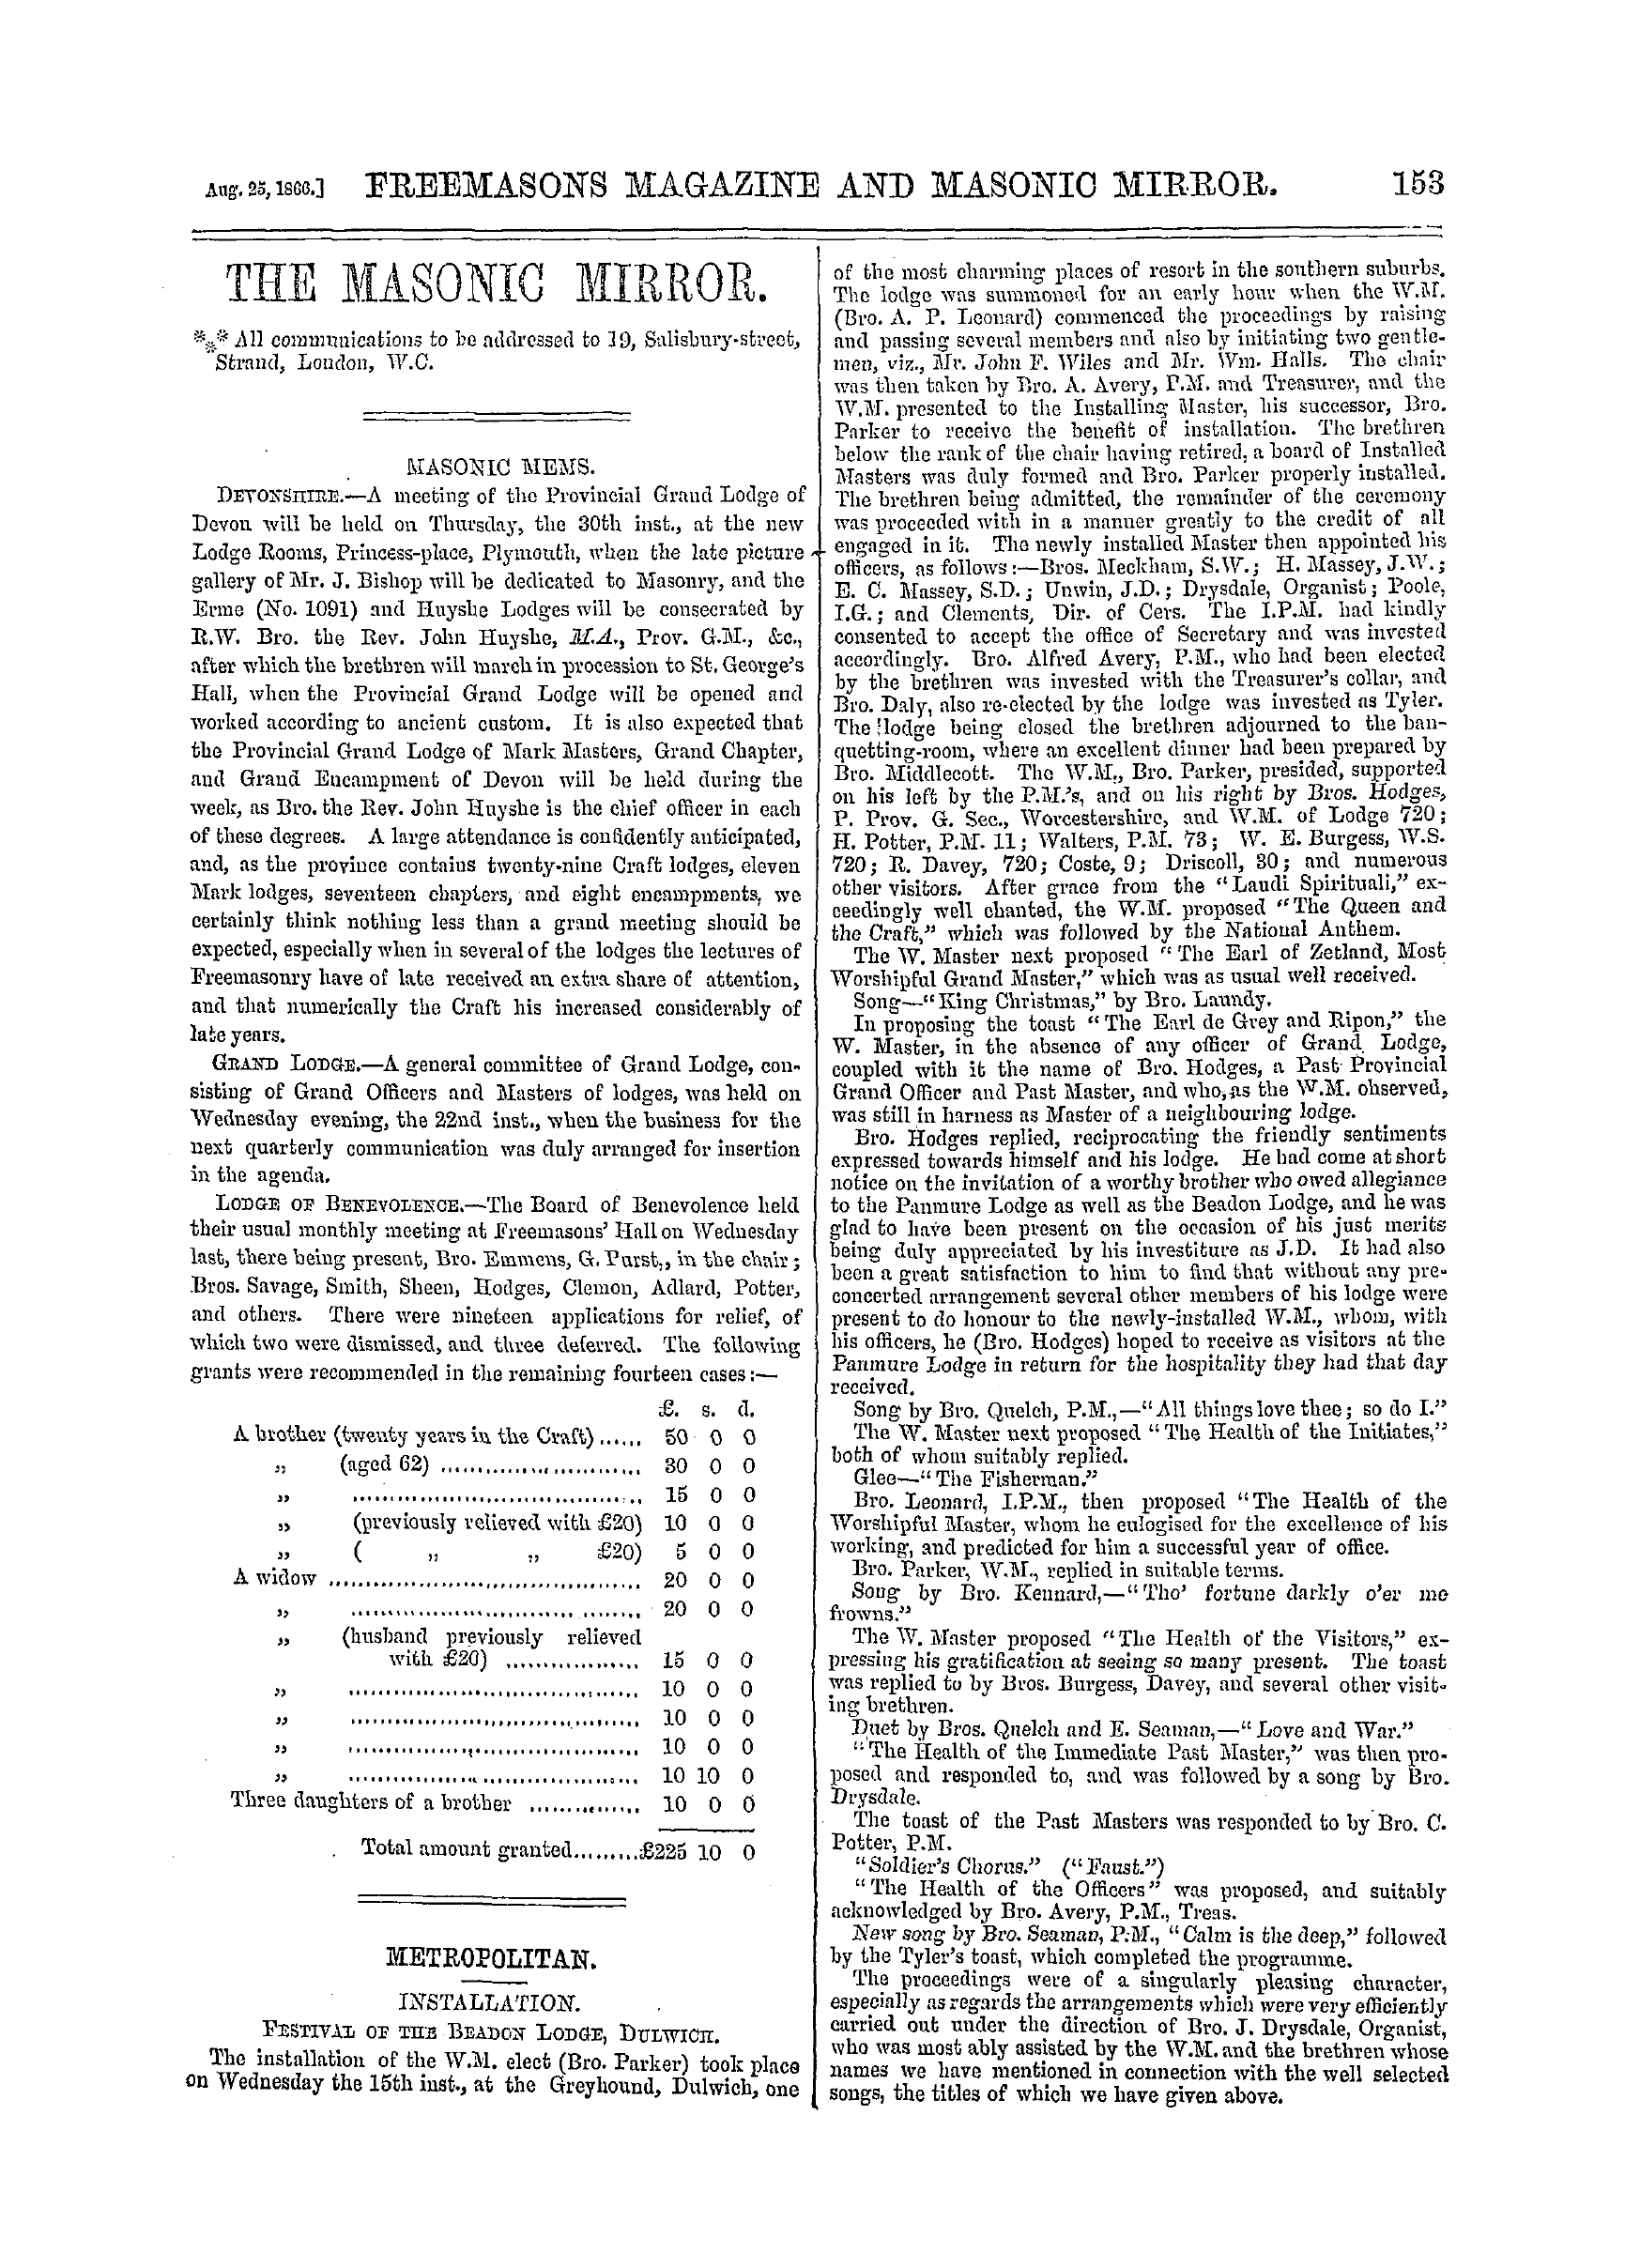 The Freemasons' Monthly Magazine: 1866-08-25: 9